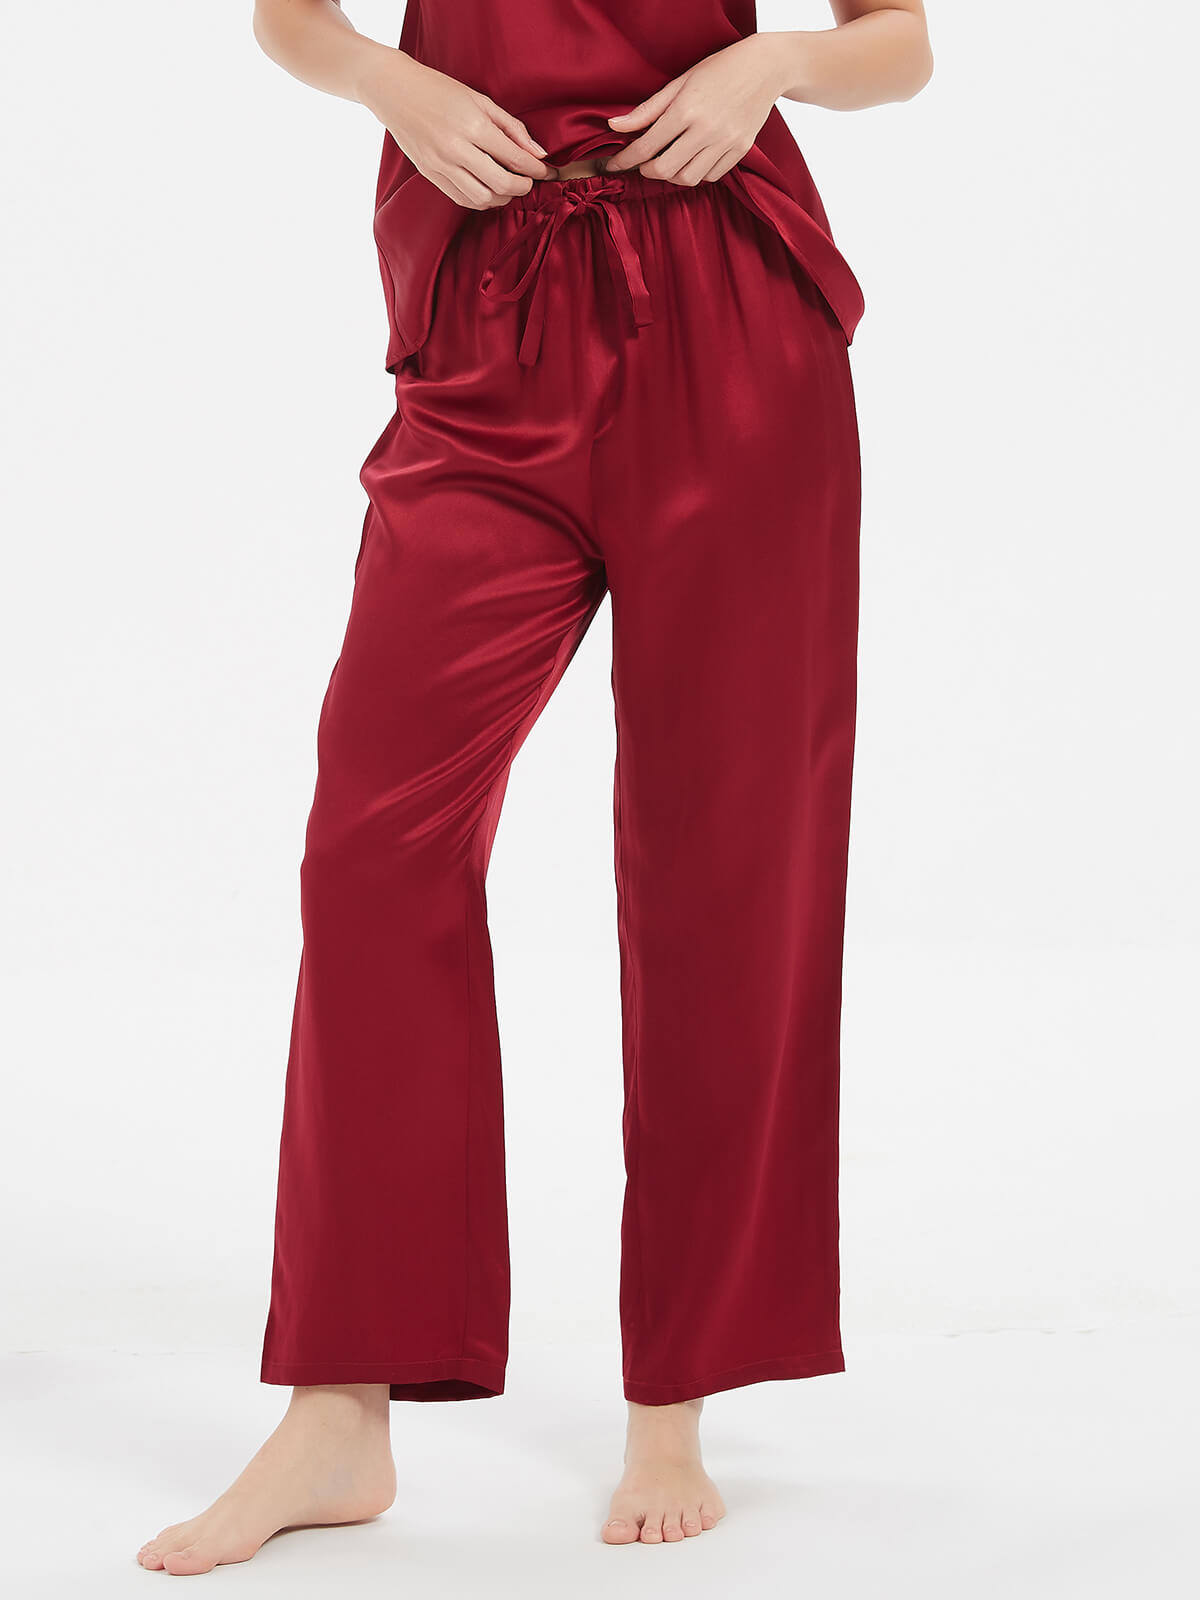 19 Momme Stylish Soft Mulberry Silk Camisole Pajama Set